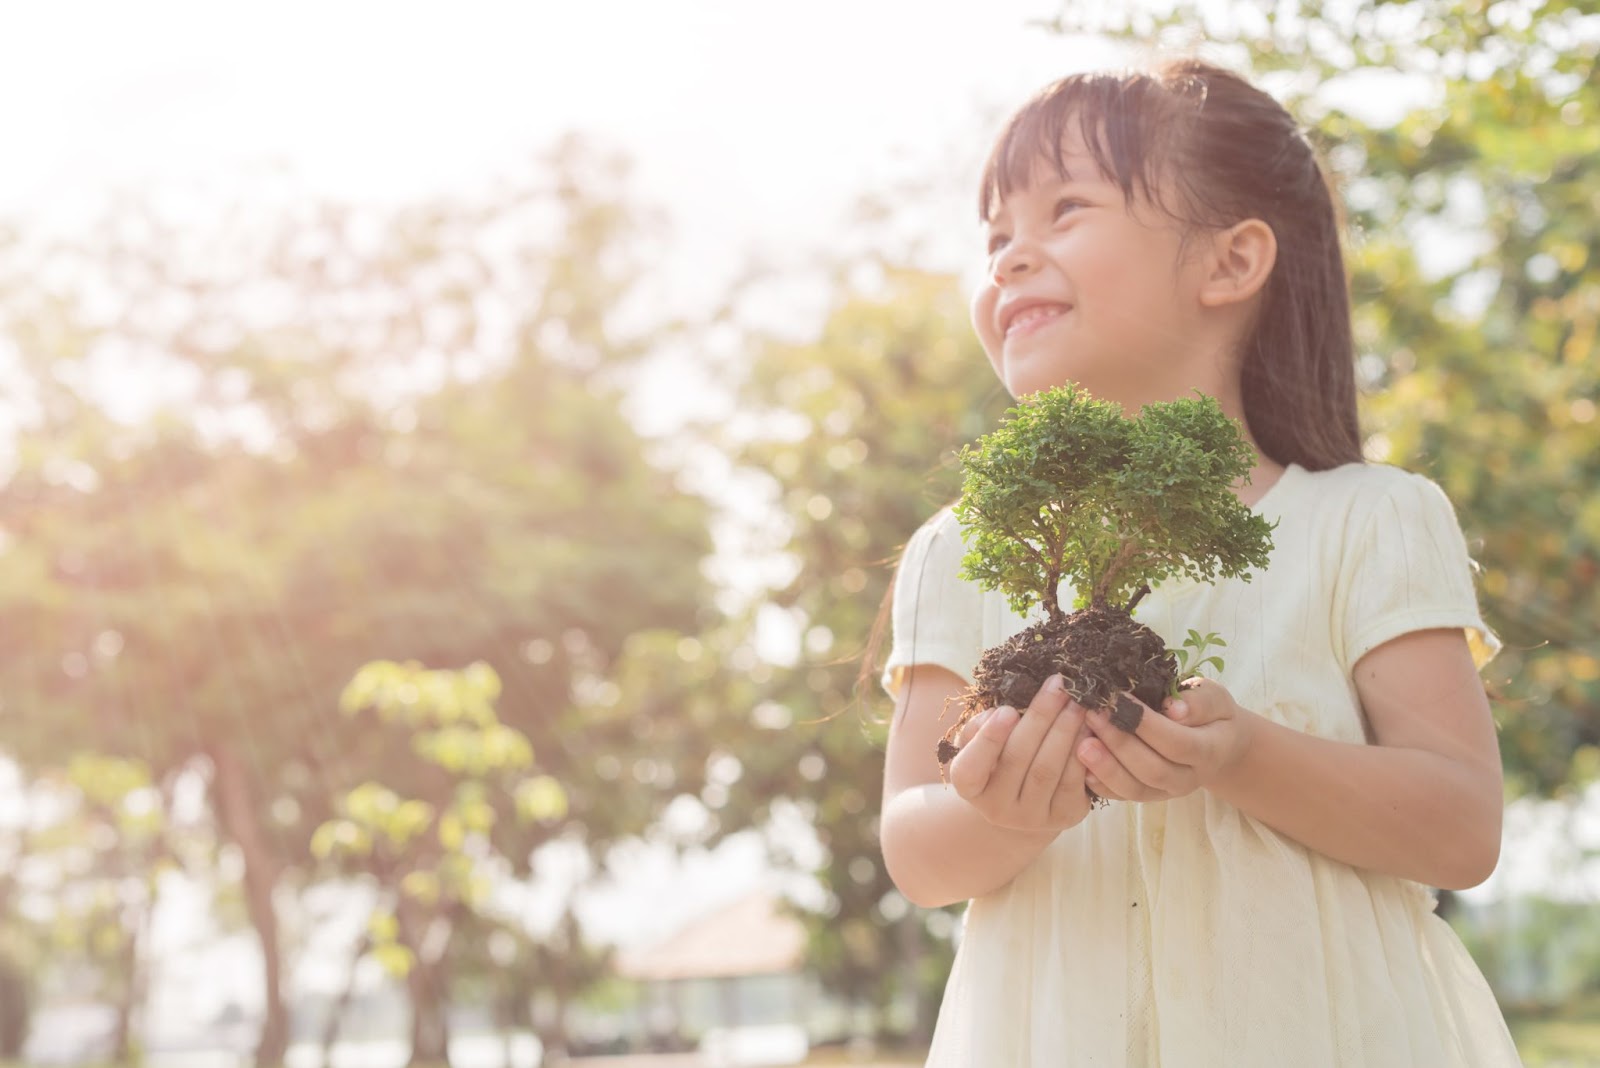 春の緑を背景に、若い植物を手にする子供。環境コンセプト